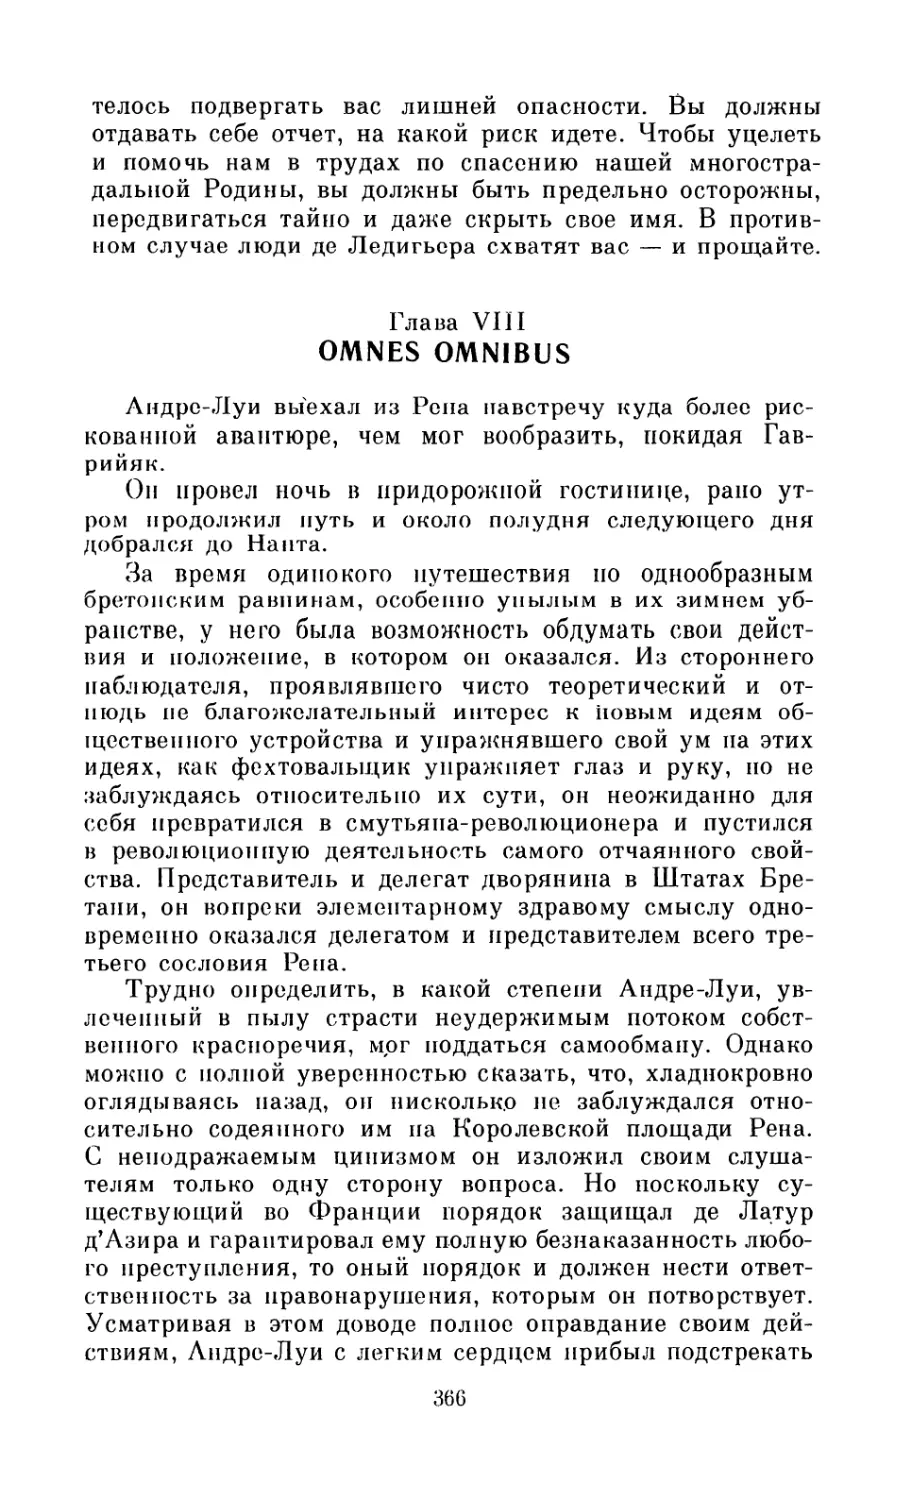 Глава VIII. Omnes Omnibus